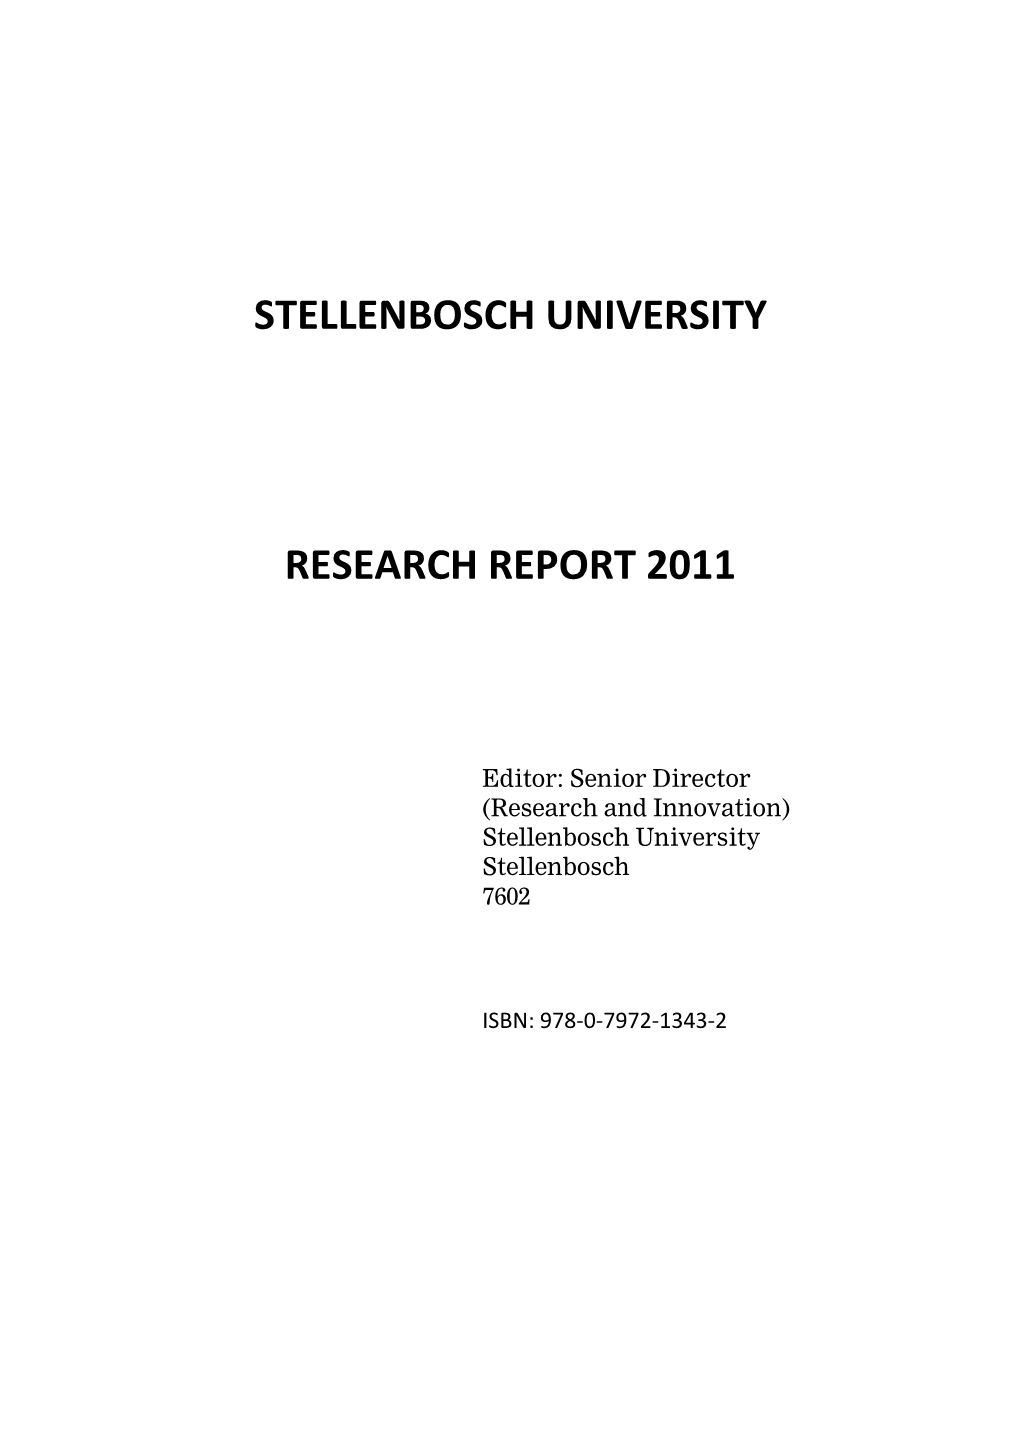 Stellenbosch University Research Report 2011